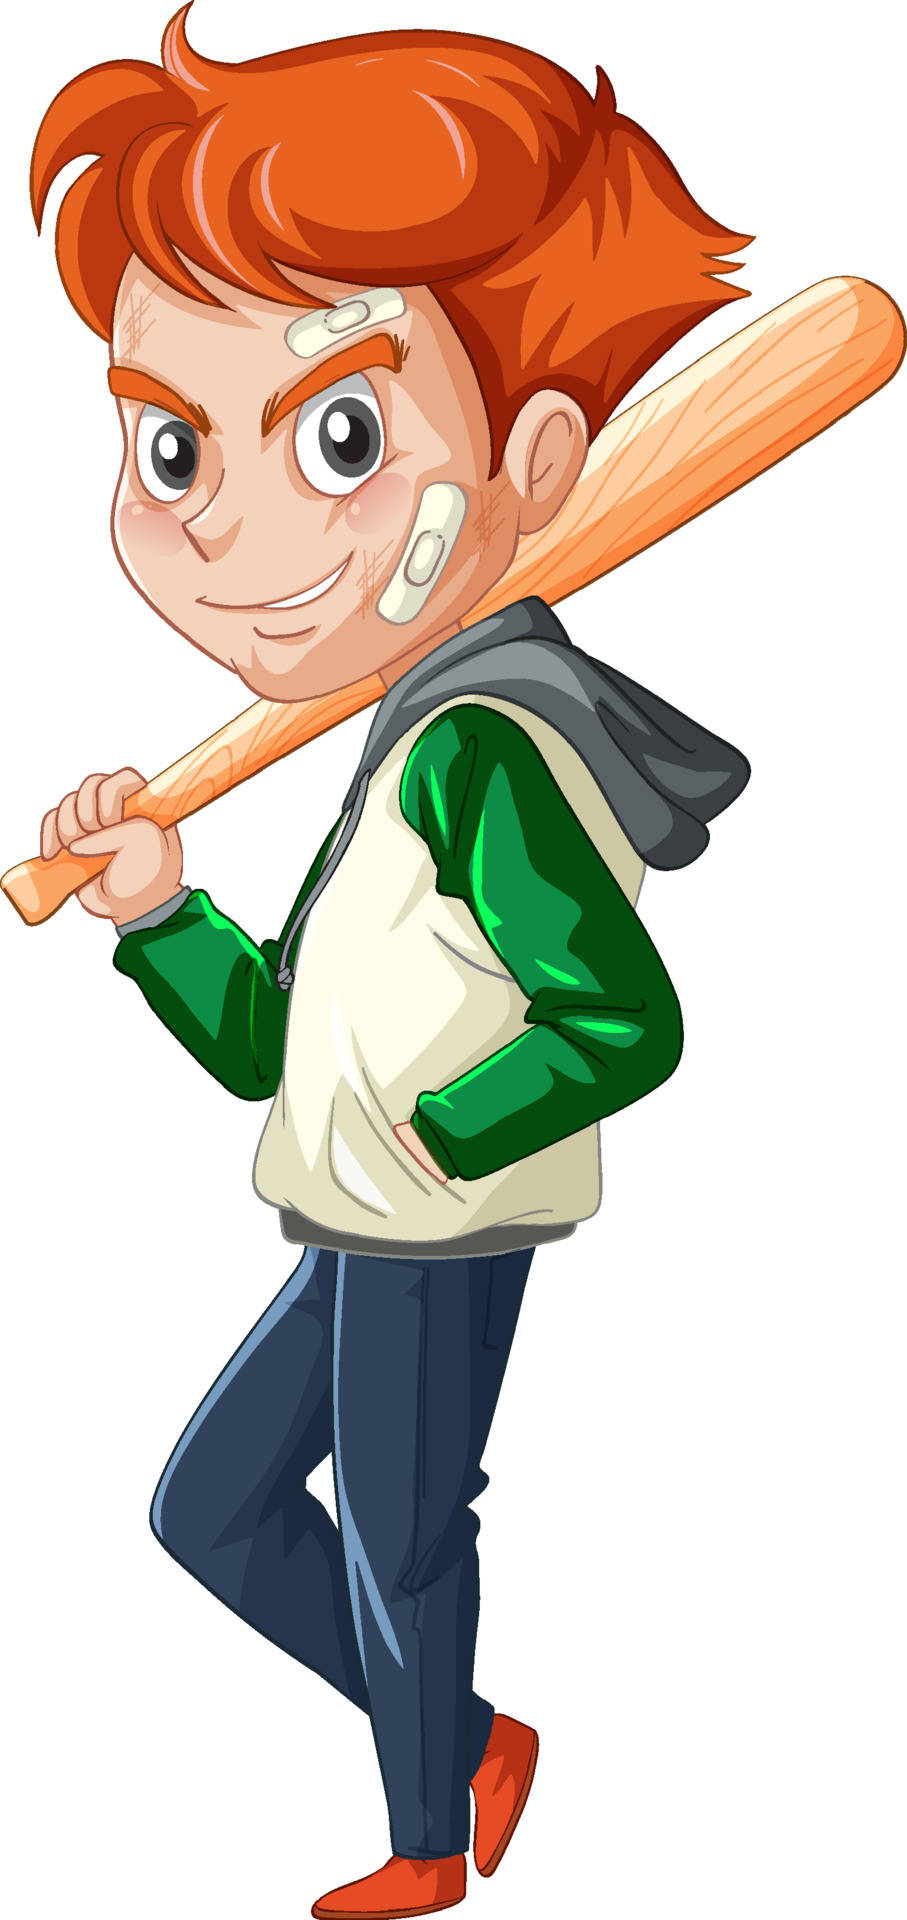 Cartoon Boy Holding A Baseball Bat Wallpaper